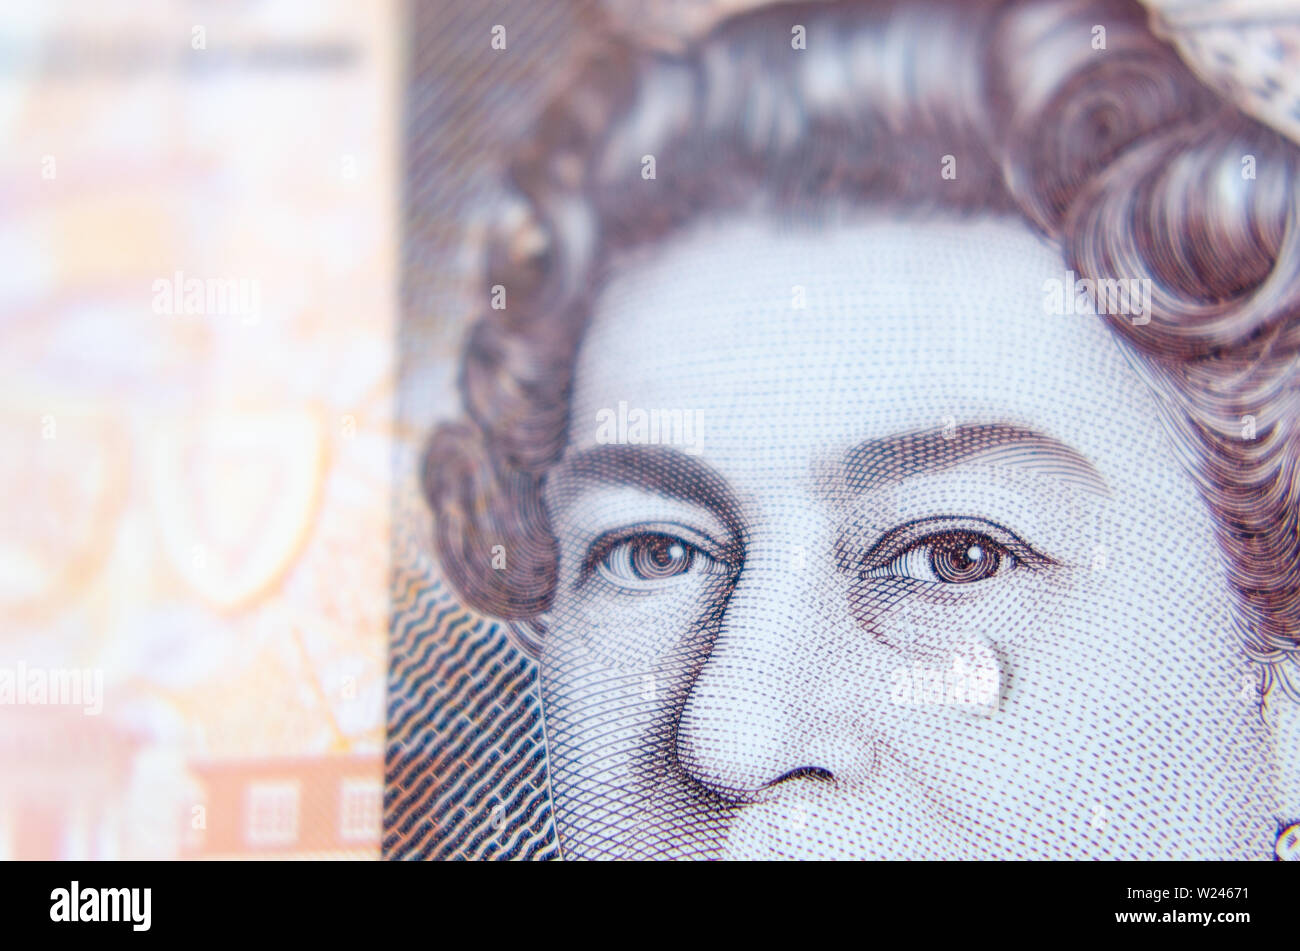 Foto macro della banconota da sterlina britannica con una goccia d'acqua come lacrima sul volto della Regina. Foto concettuale. Foto Stock